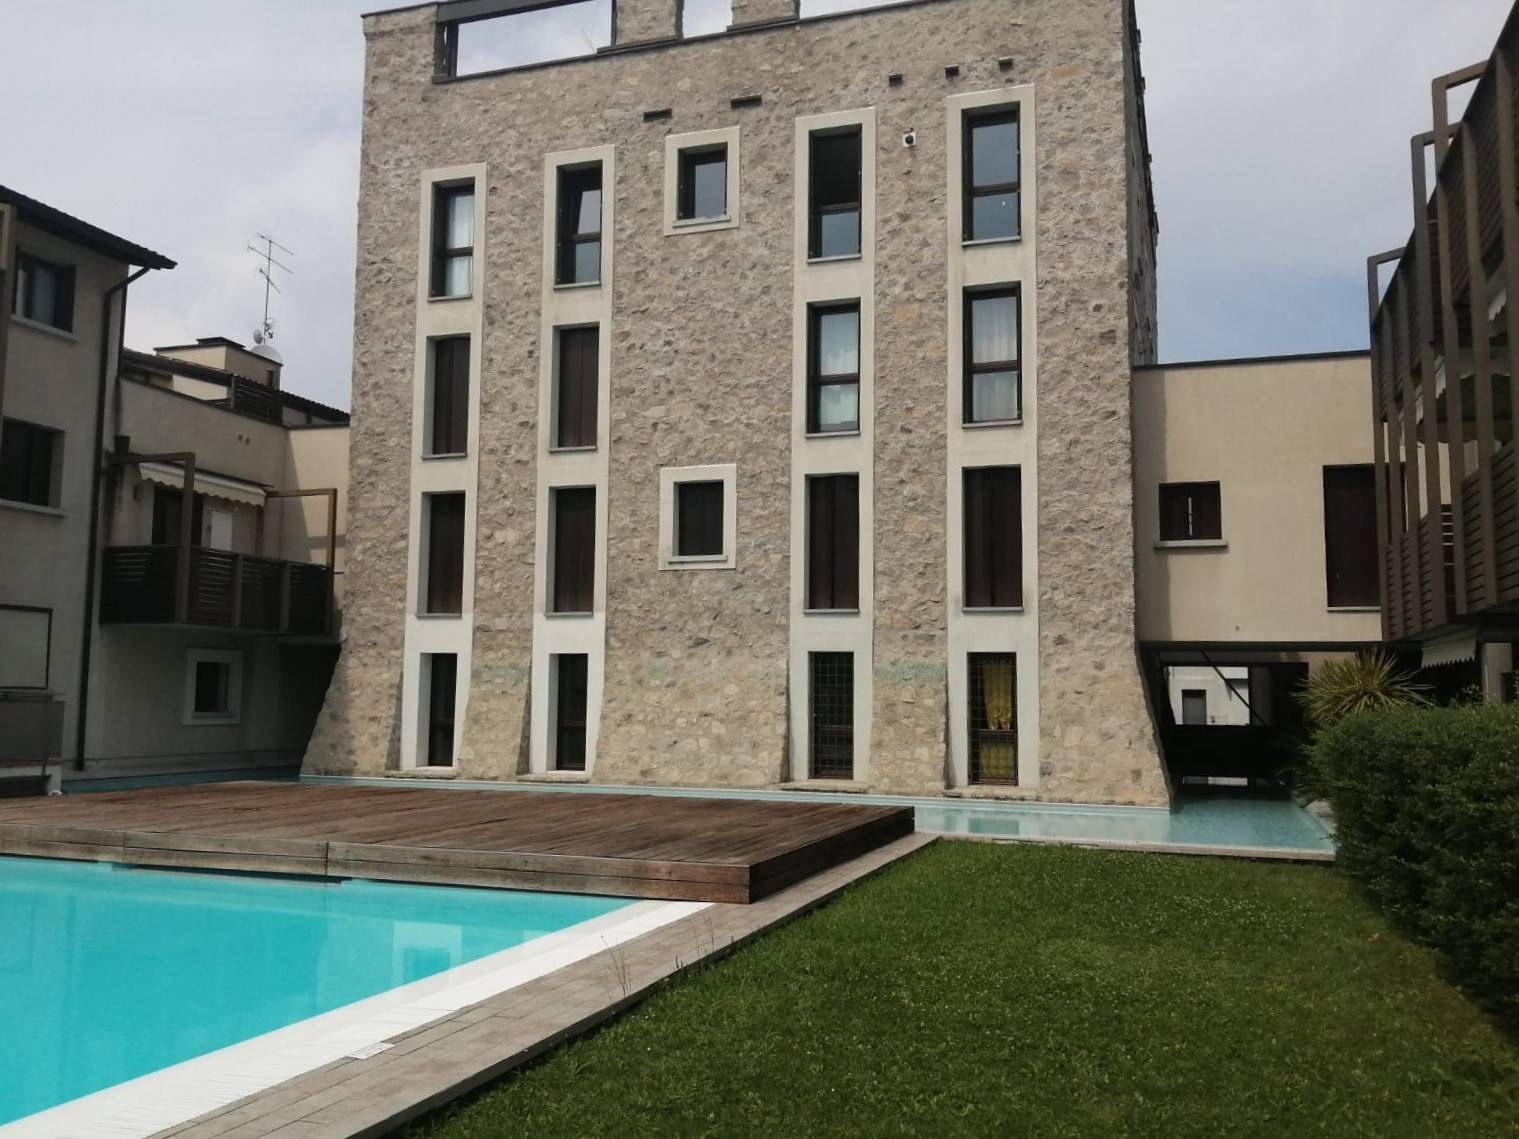 Nel centro storico di Moniga del Garda, in elegante e prestigioso residence con piscina, proponiamo trilocale con box al piano primo servito da ascensore. L'appartamento è composto da un'ampia zona 